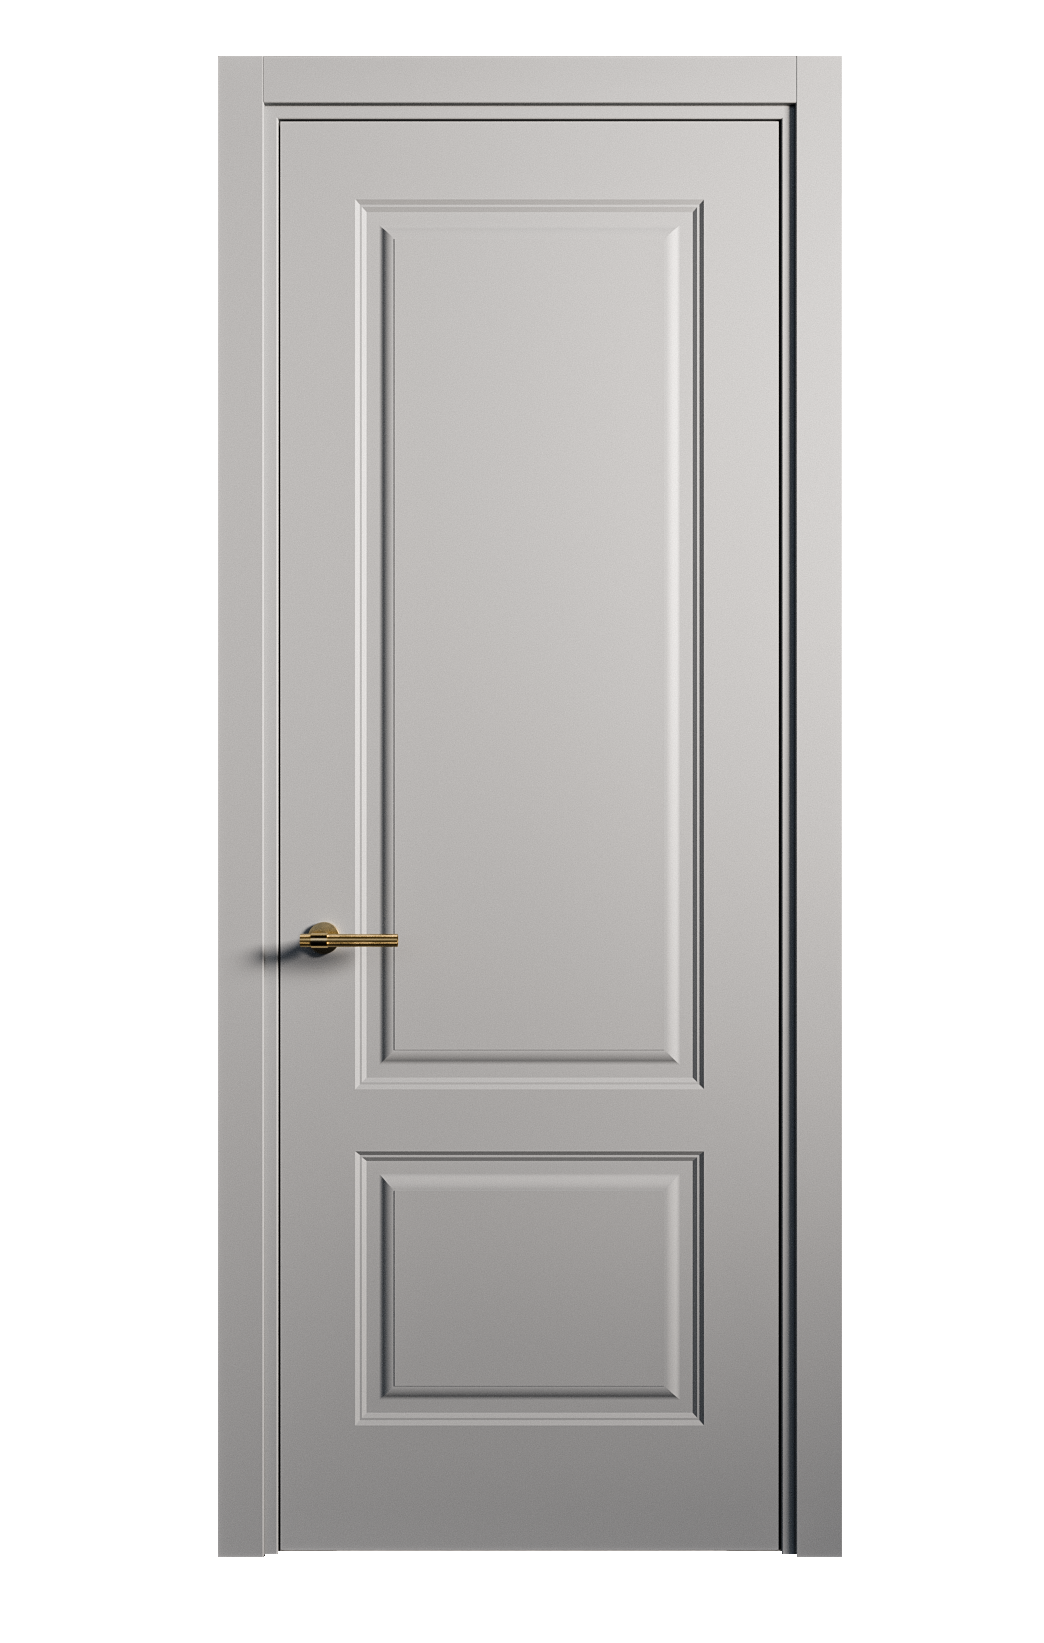 Межкомнатная дверь Вита-1 глухая эмаль ral 7040 26244